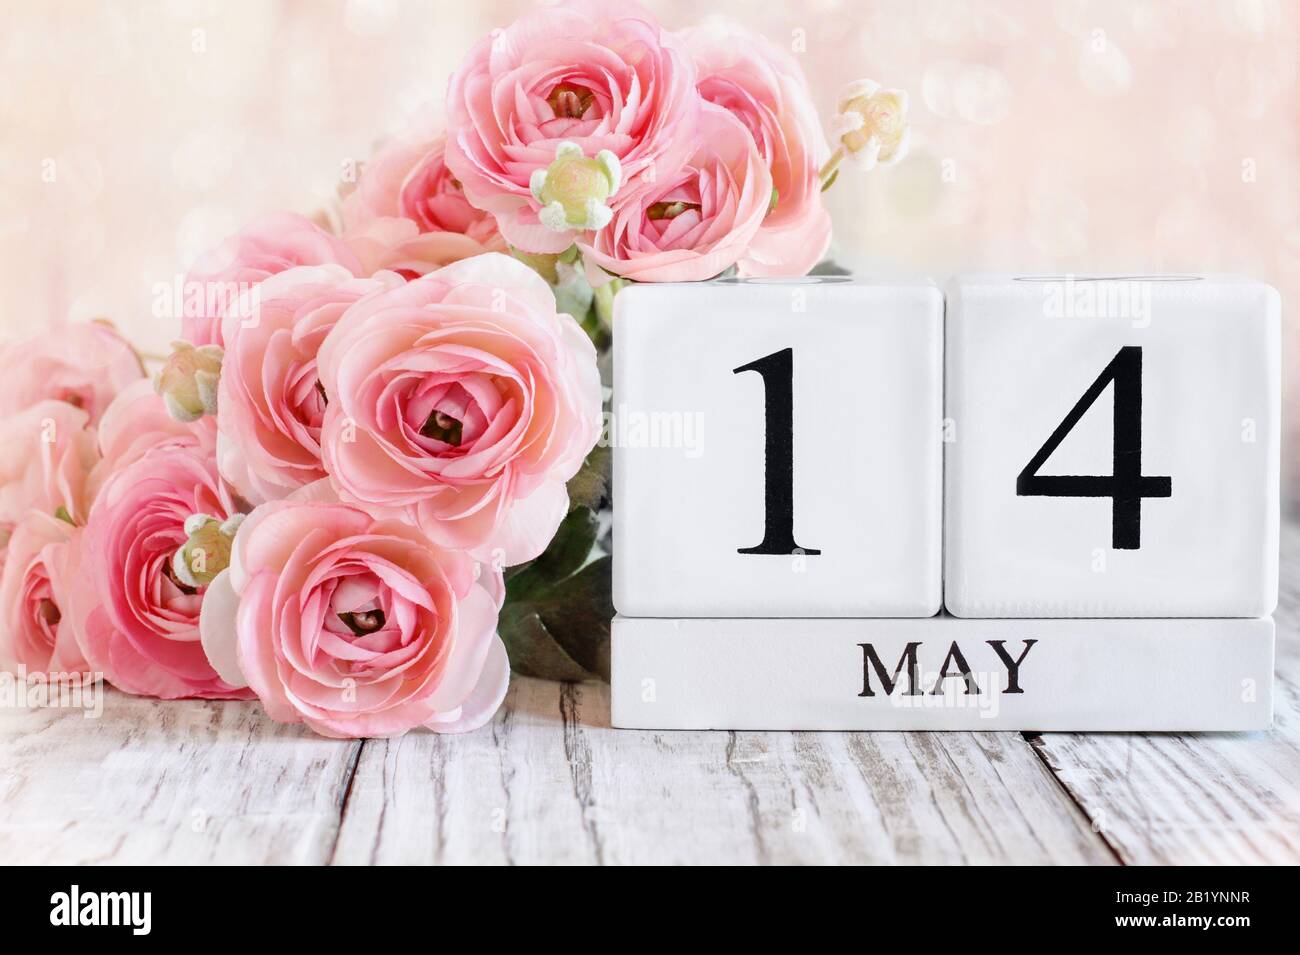 Blocs calendrier en bois blanc avec la date du 14 mai et fleurs roses de ranunculus sur une table en bois. Mise au point sélective avec arrière-plan flou. Banque D'Images